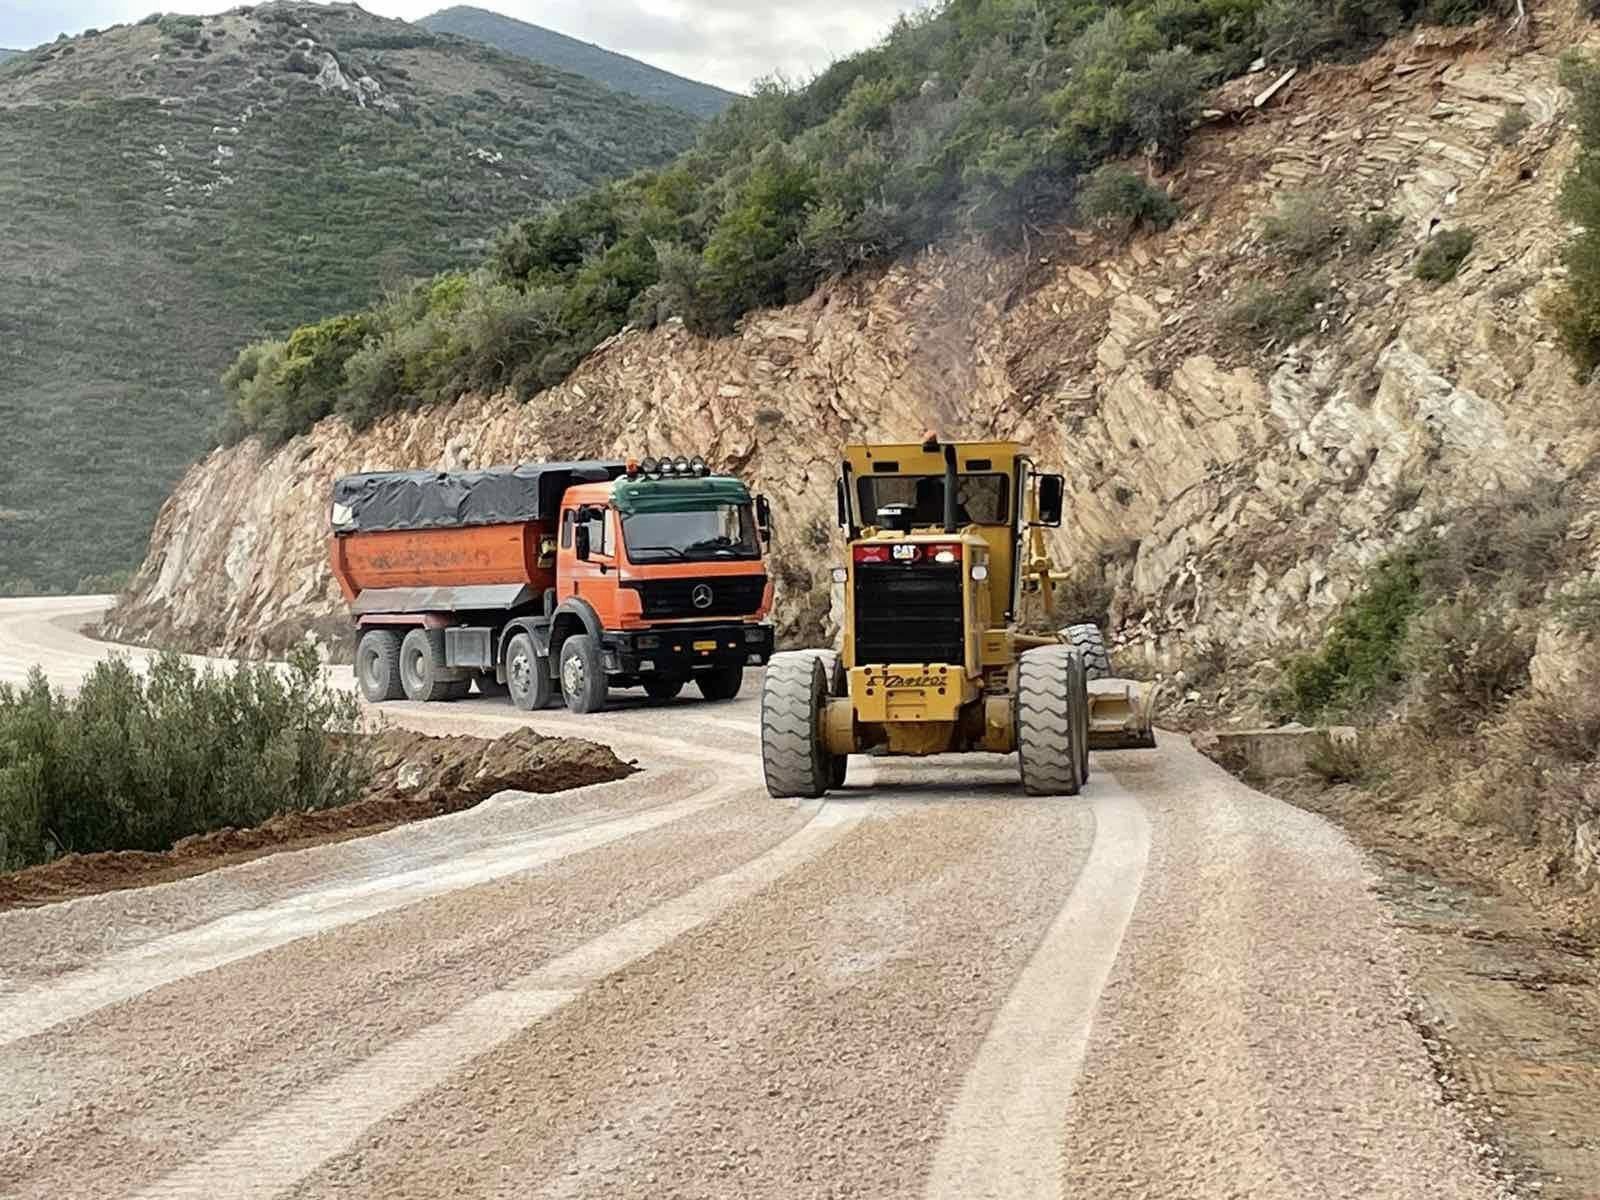 Εύβοια: Δύο πασίγνωστες παραλίες επιτέλους συνδέονται με κανονικό δρόμο